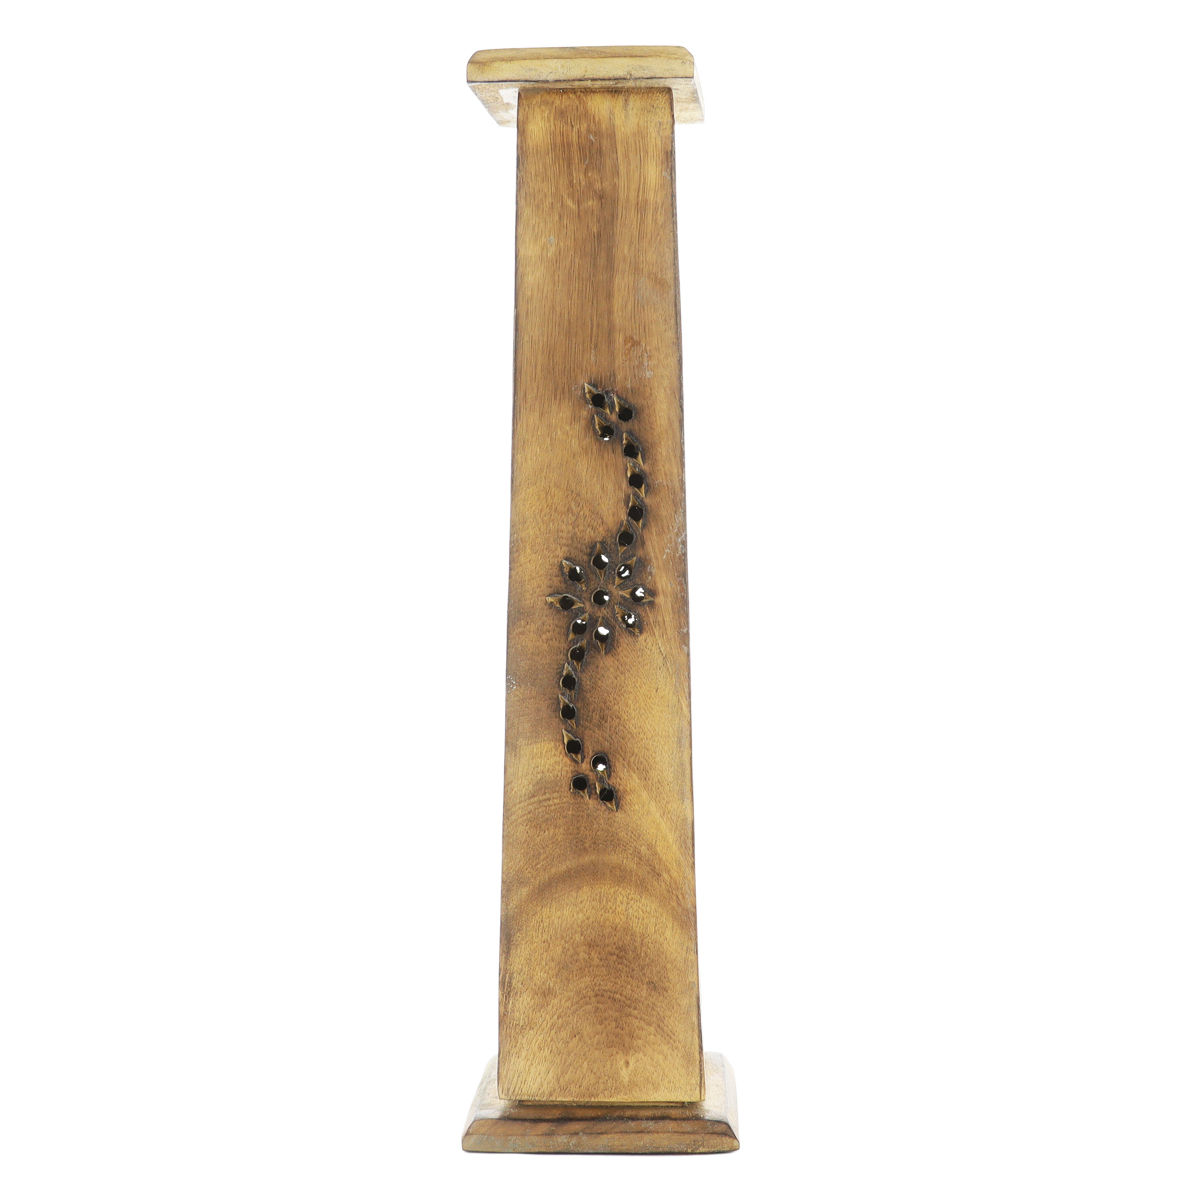 Brûle encens tour carrée 5,5 cm évidée en bois style bois brûlé pour bâtonnets ou cônes, H. 30 cm.